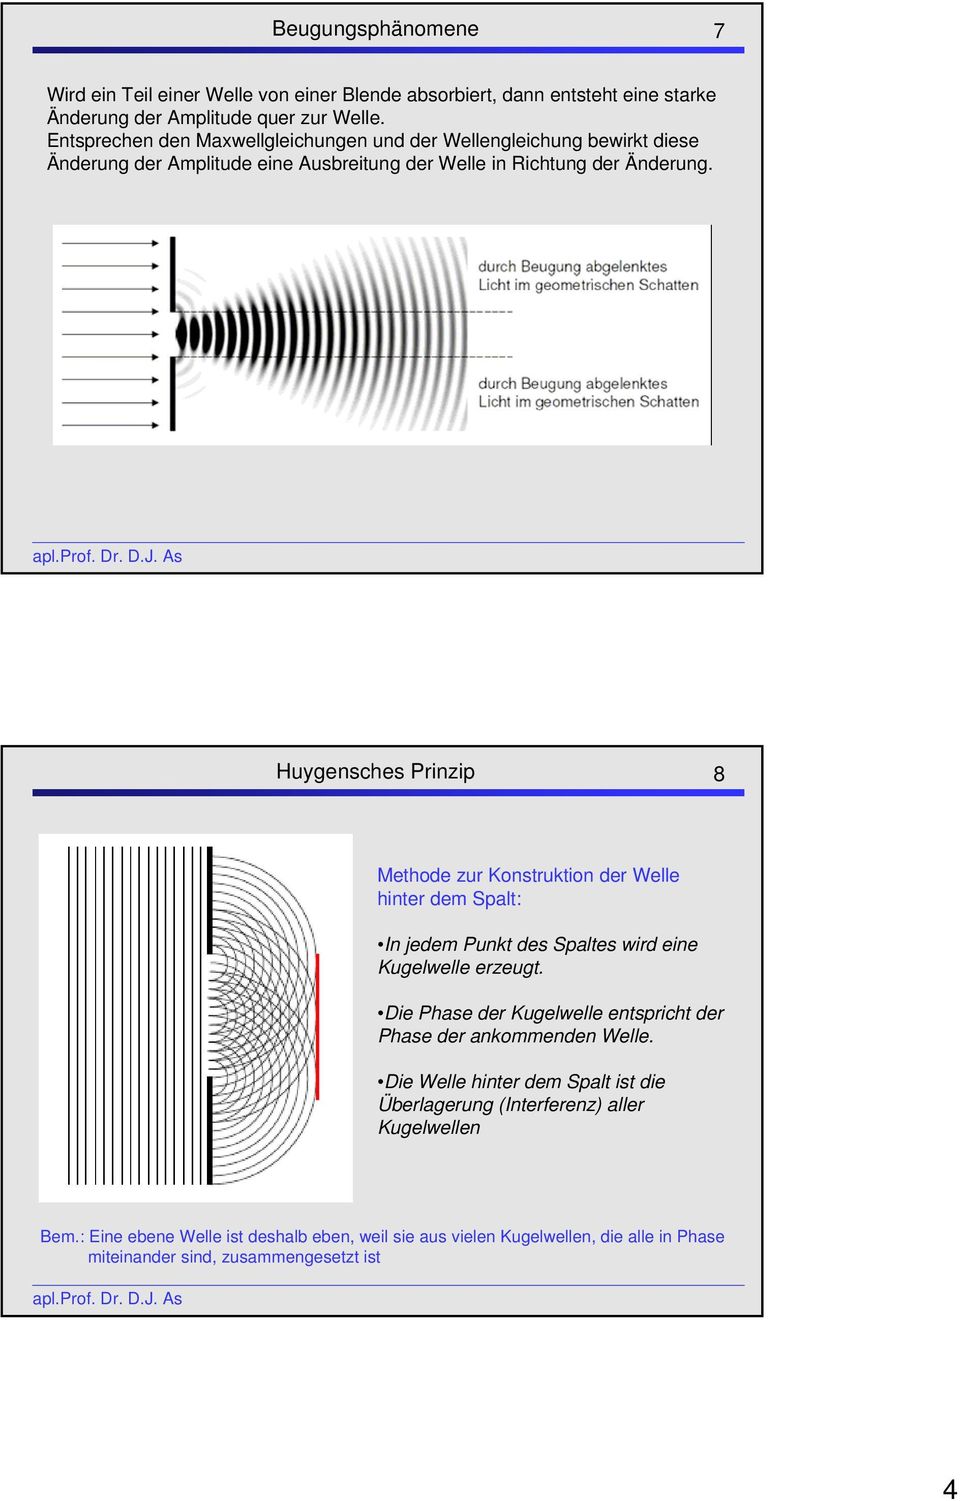 Huygensches Prinzip 8 Methode zur Konstruktion der Welle hinter dem Spalt: In jedem Punkt des Spaltes wird eine Kugelwelle erzeugt.